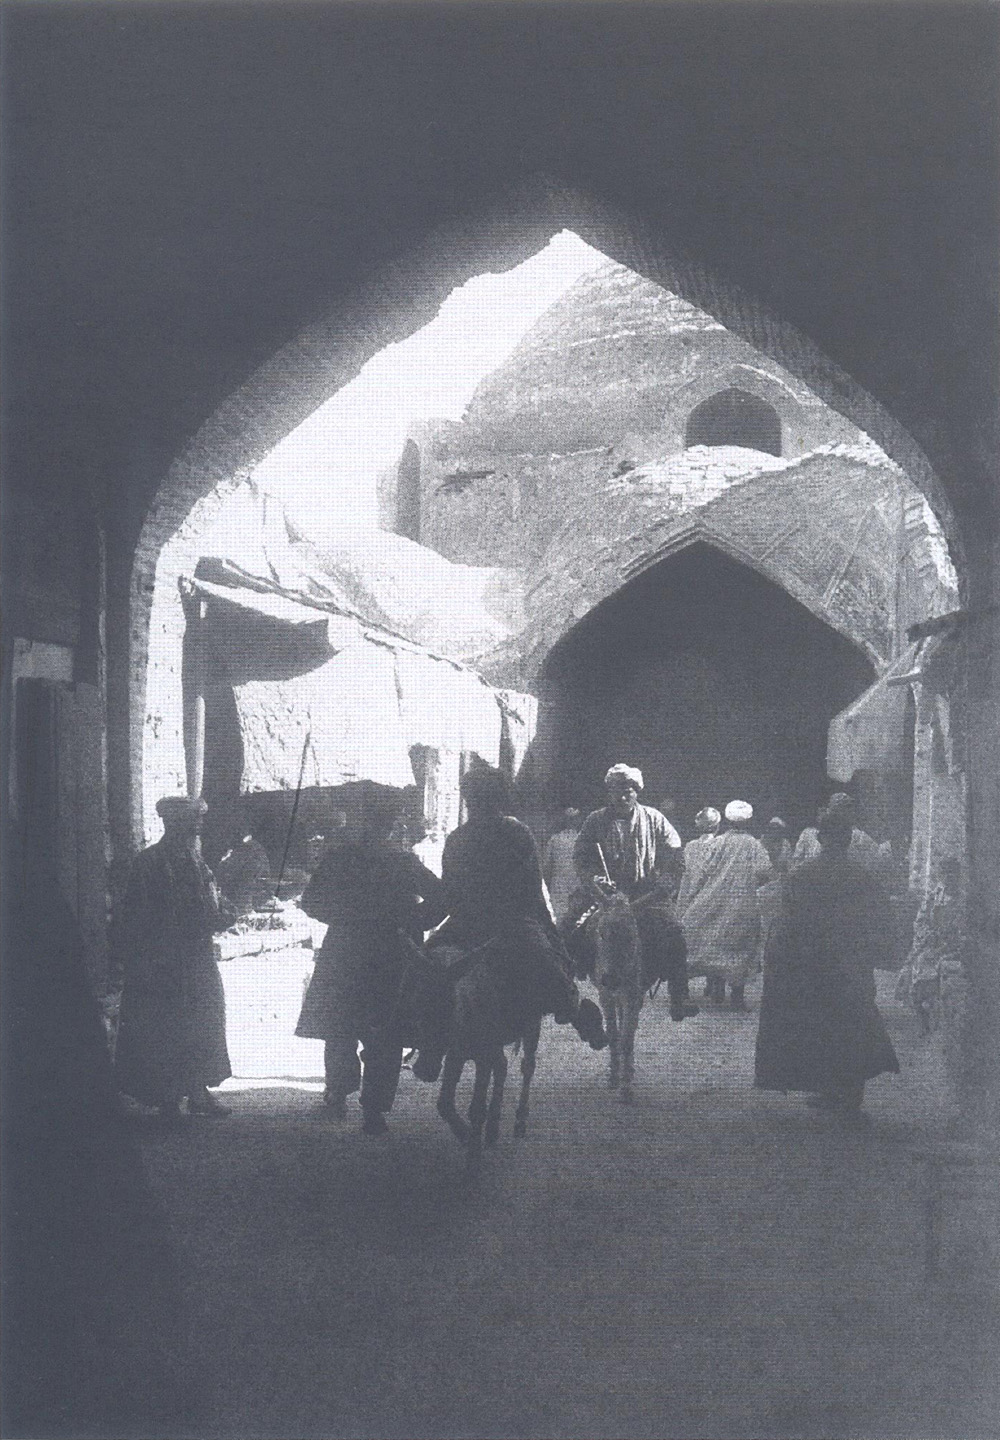  The roofed bazaar. 1928. Bukhara